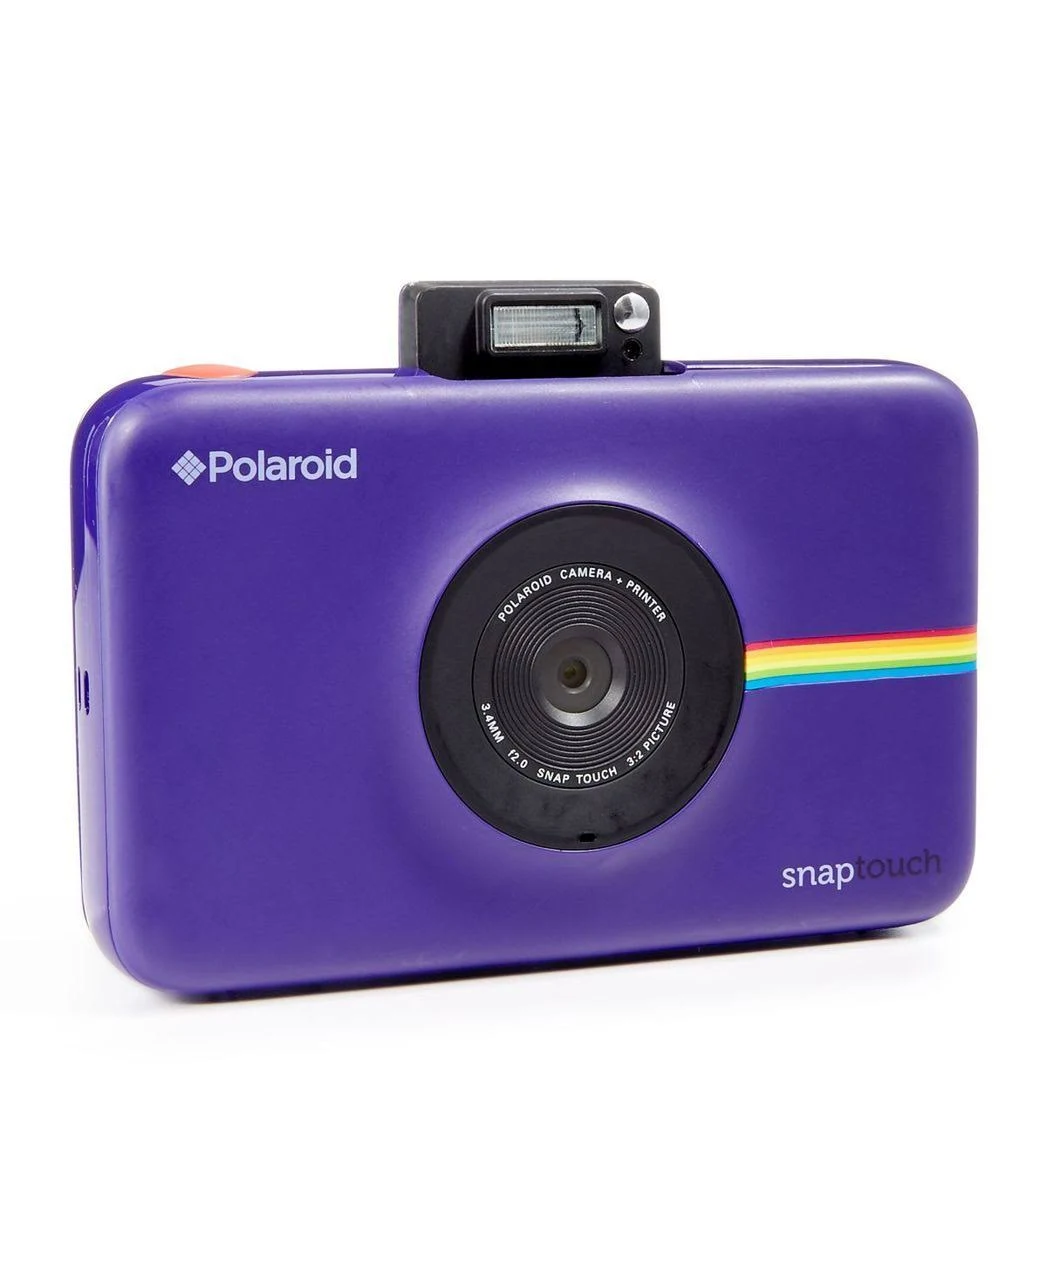 Polaroid Cámara digital de impresión instantánea Snap Touch con pantalla LCD (púrpura) con tecnología de impresión Zink Zero Ink